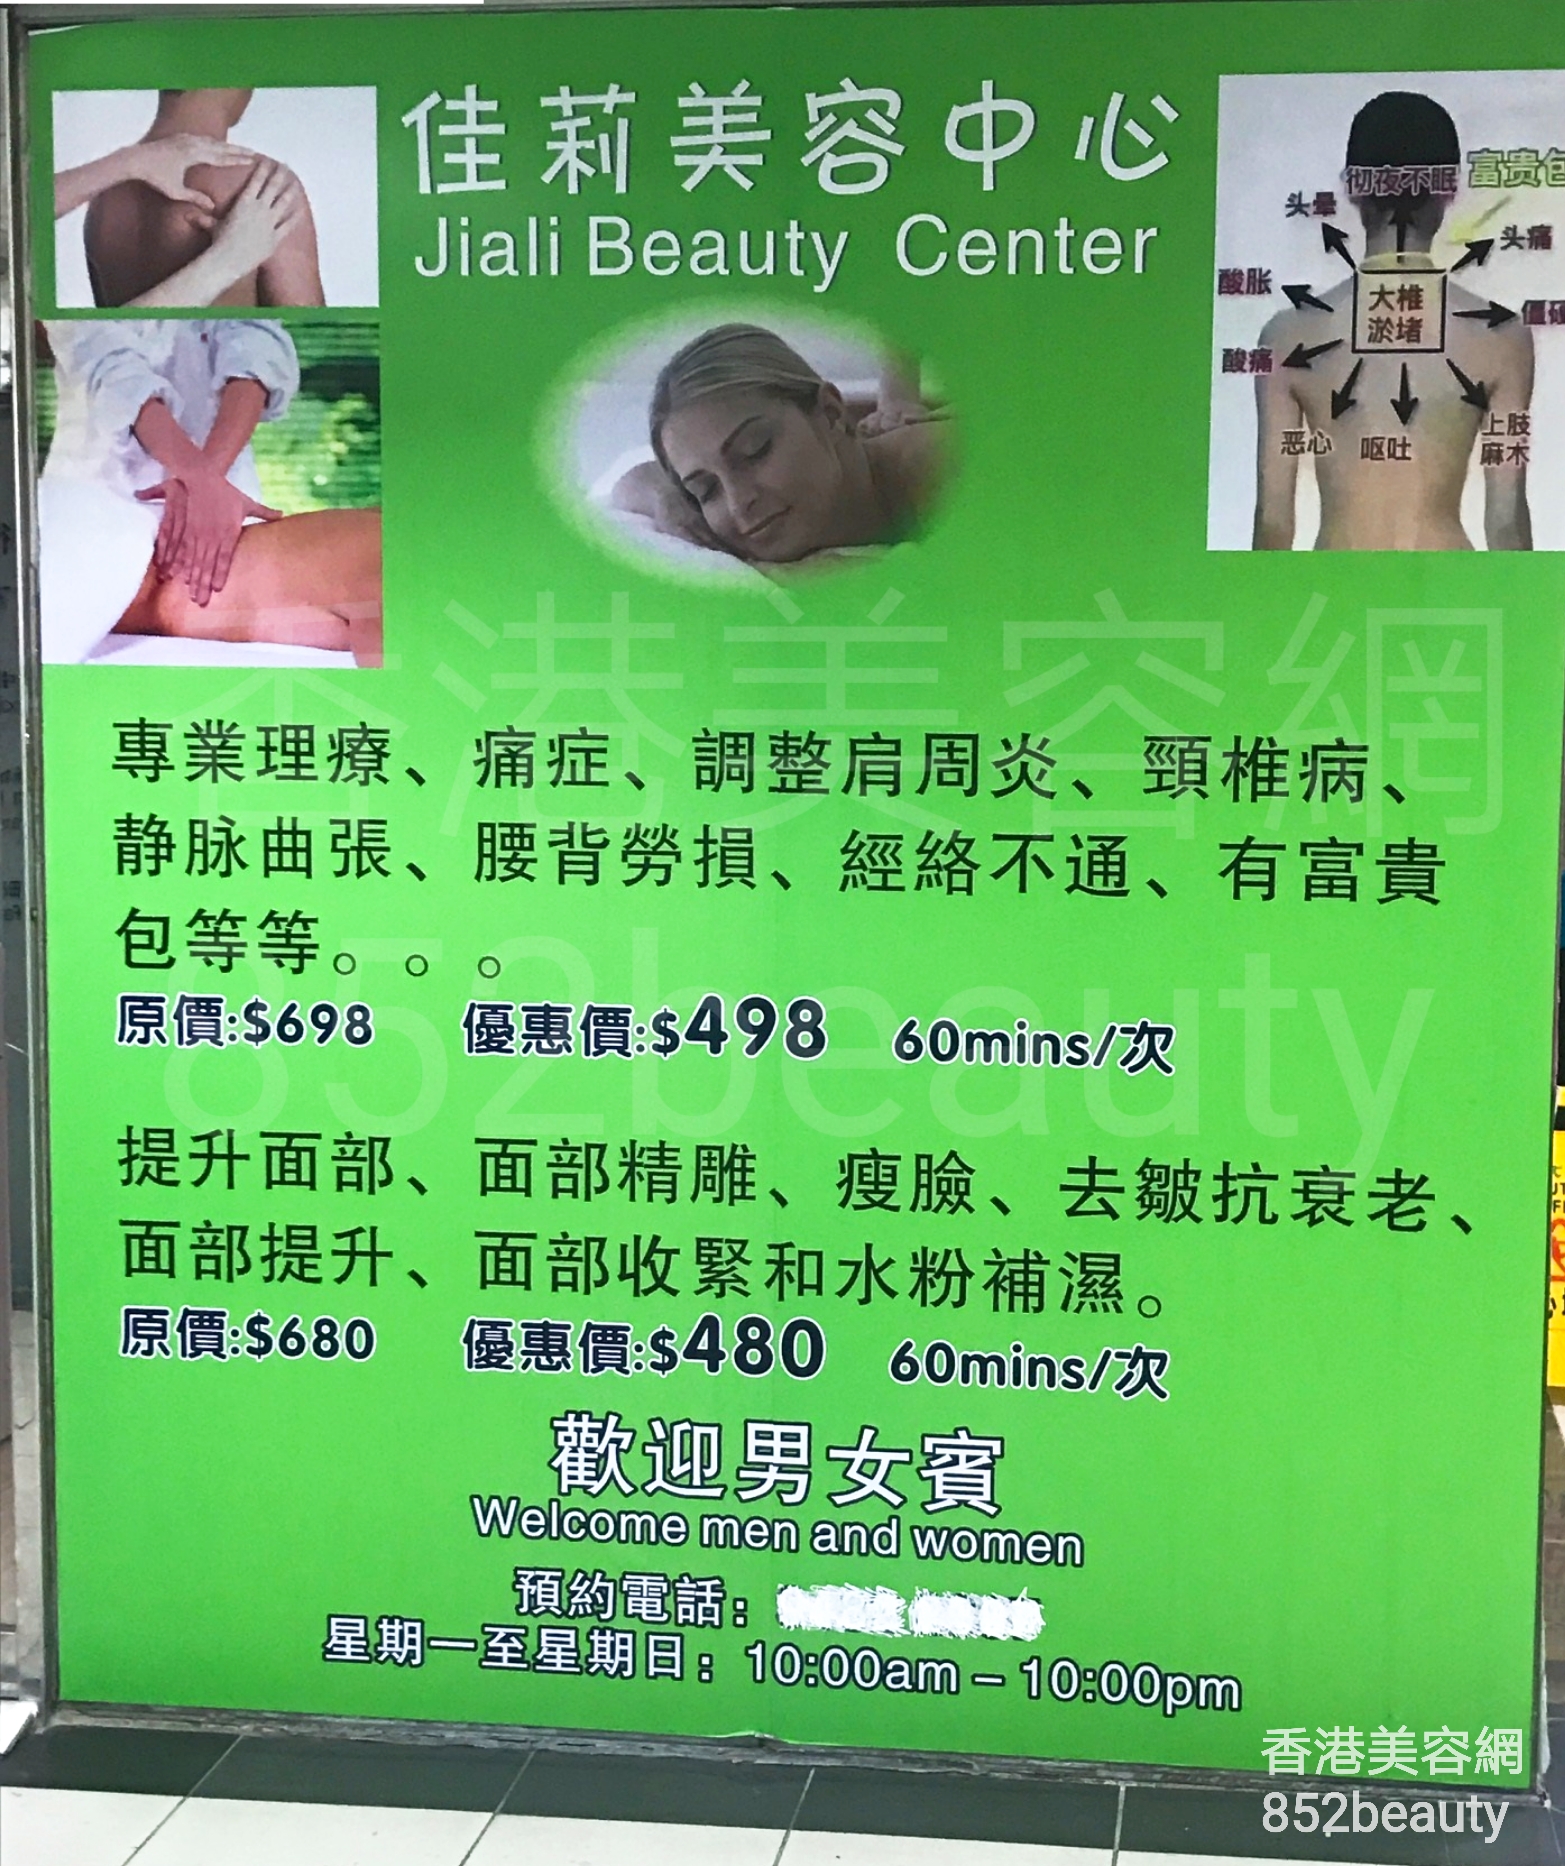 美容院: 佳莉美容中心 Jiali Beauty Center